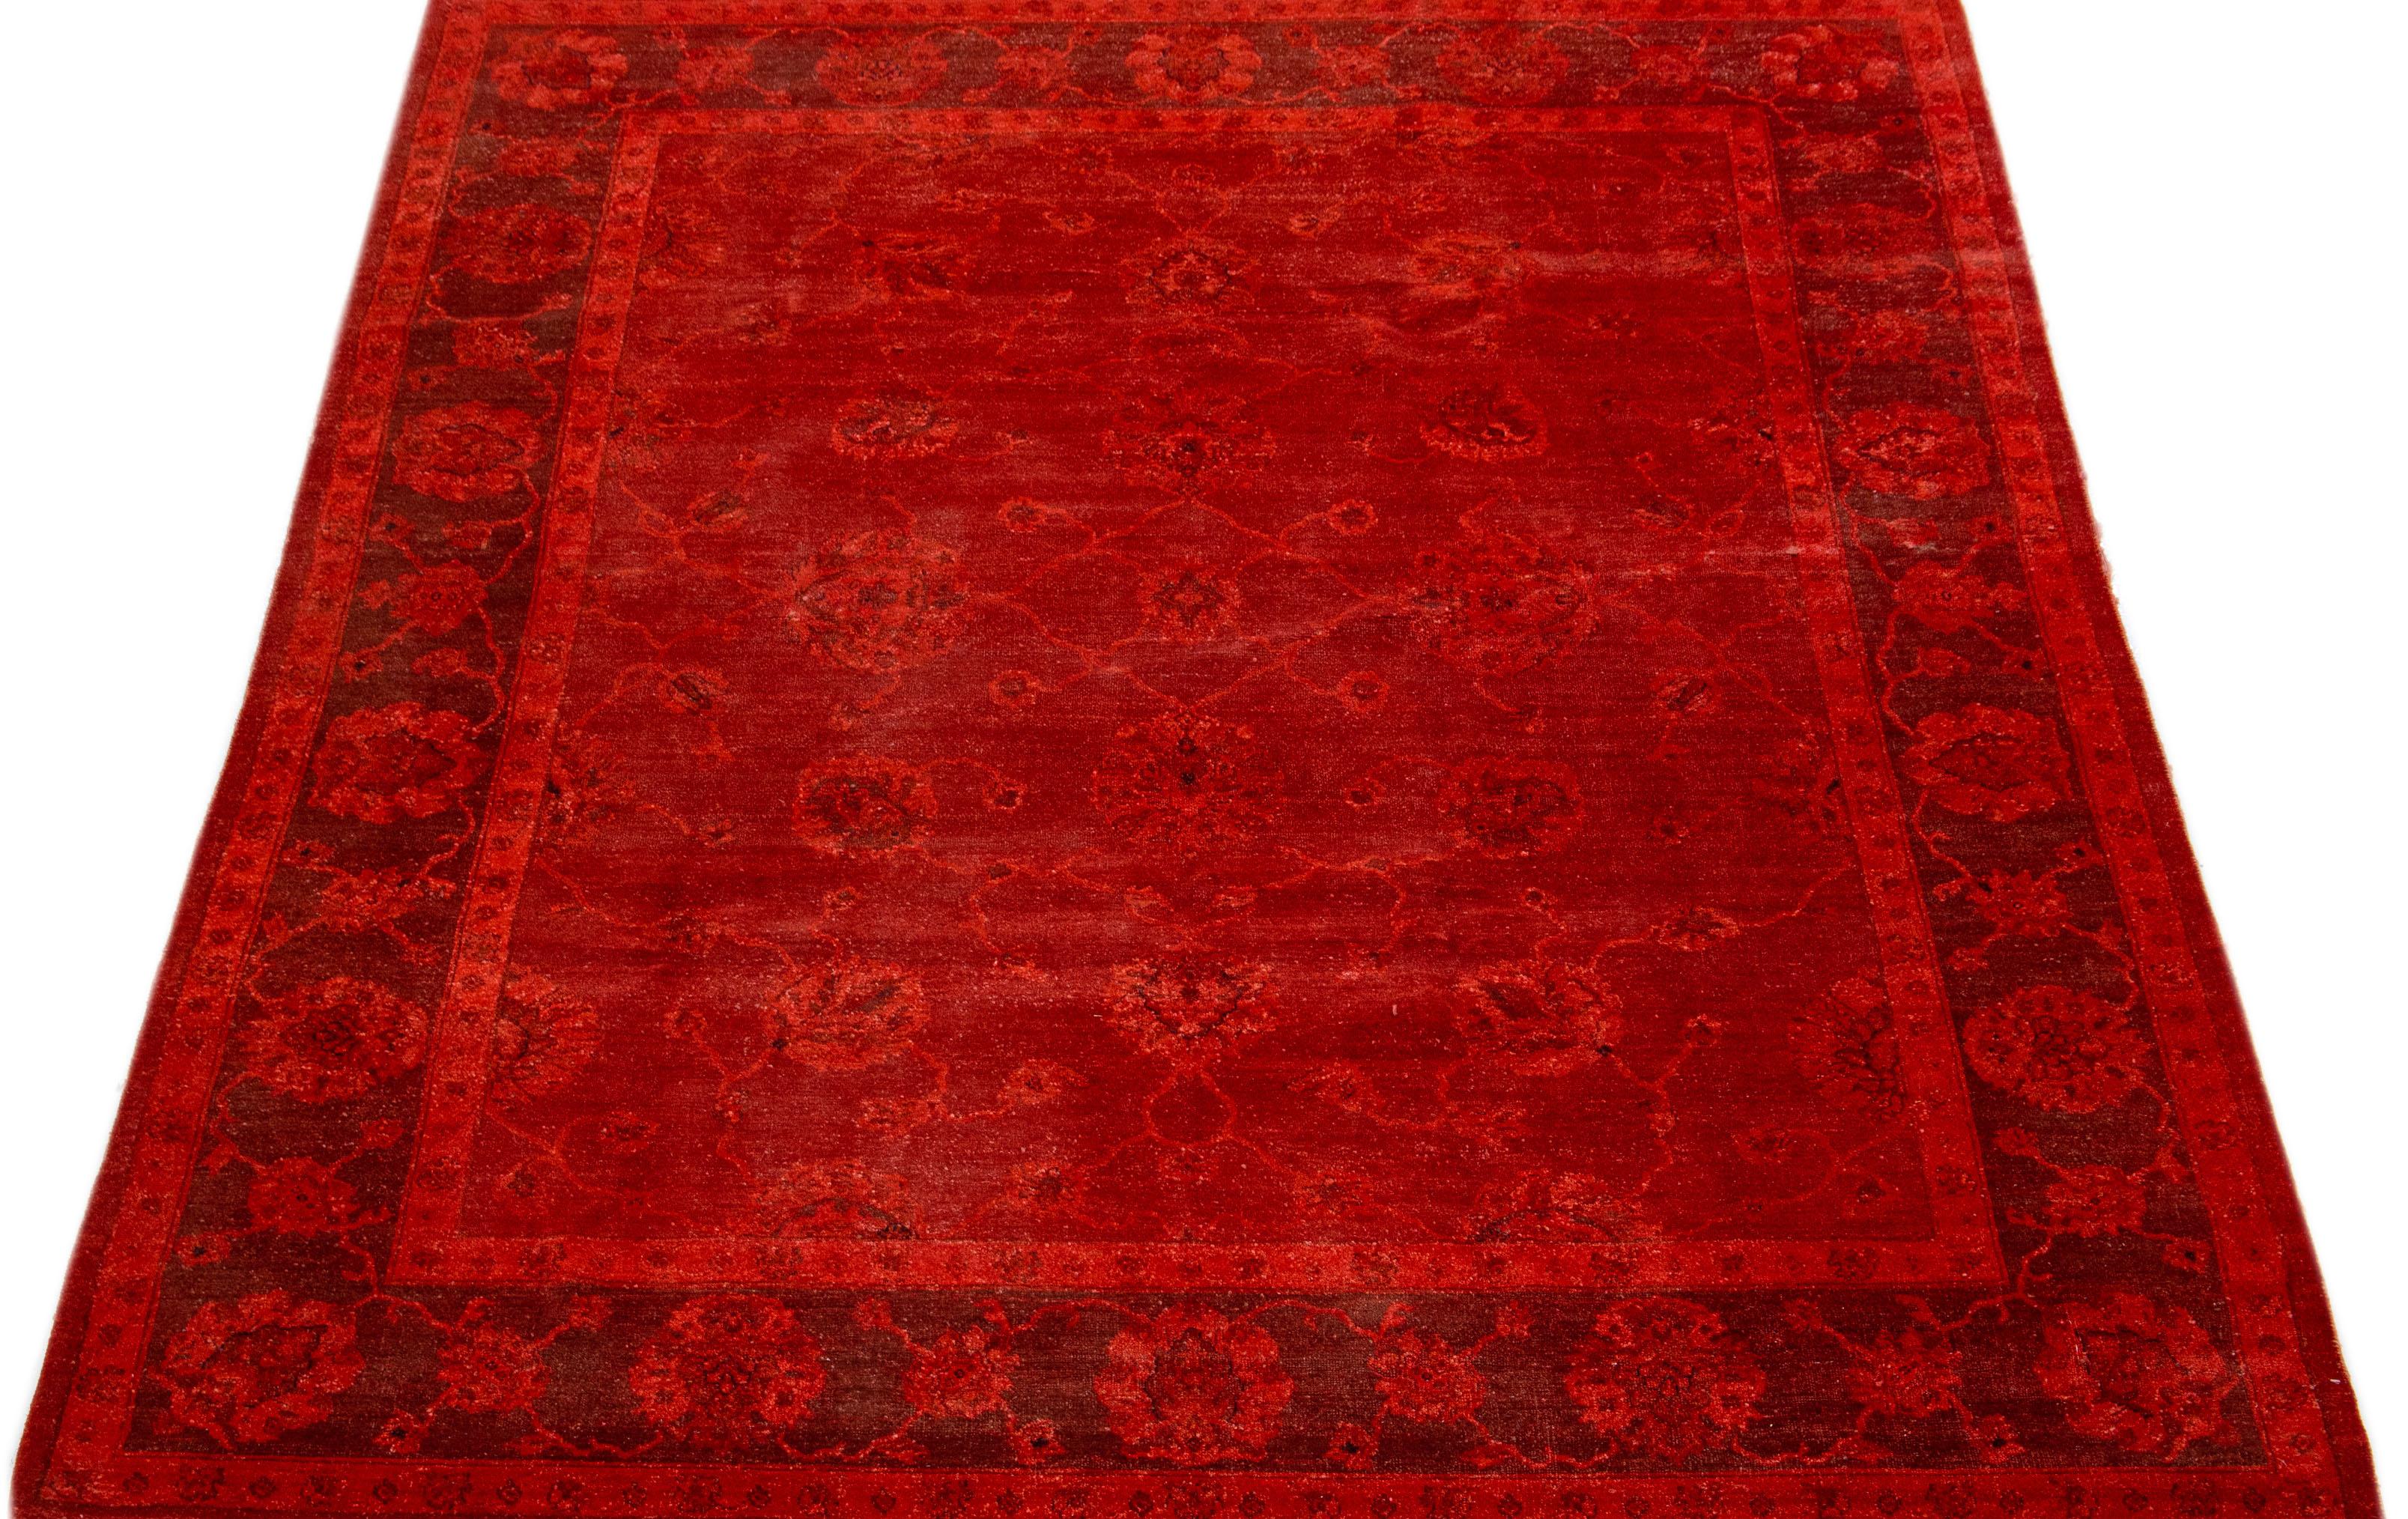 Présenté dans le style Art & Crafts Timeless-art, ce tapis en laine fait preuve d'une élégance intemporelle avec un mélange de délicats motifs floraux et un fond rouge vif.

Ce tapis mesure 7'10